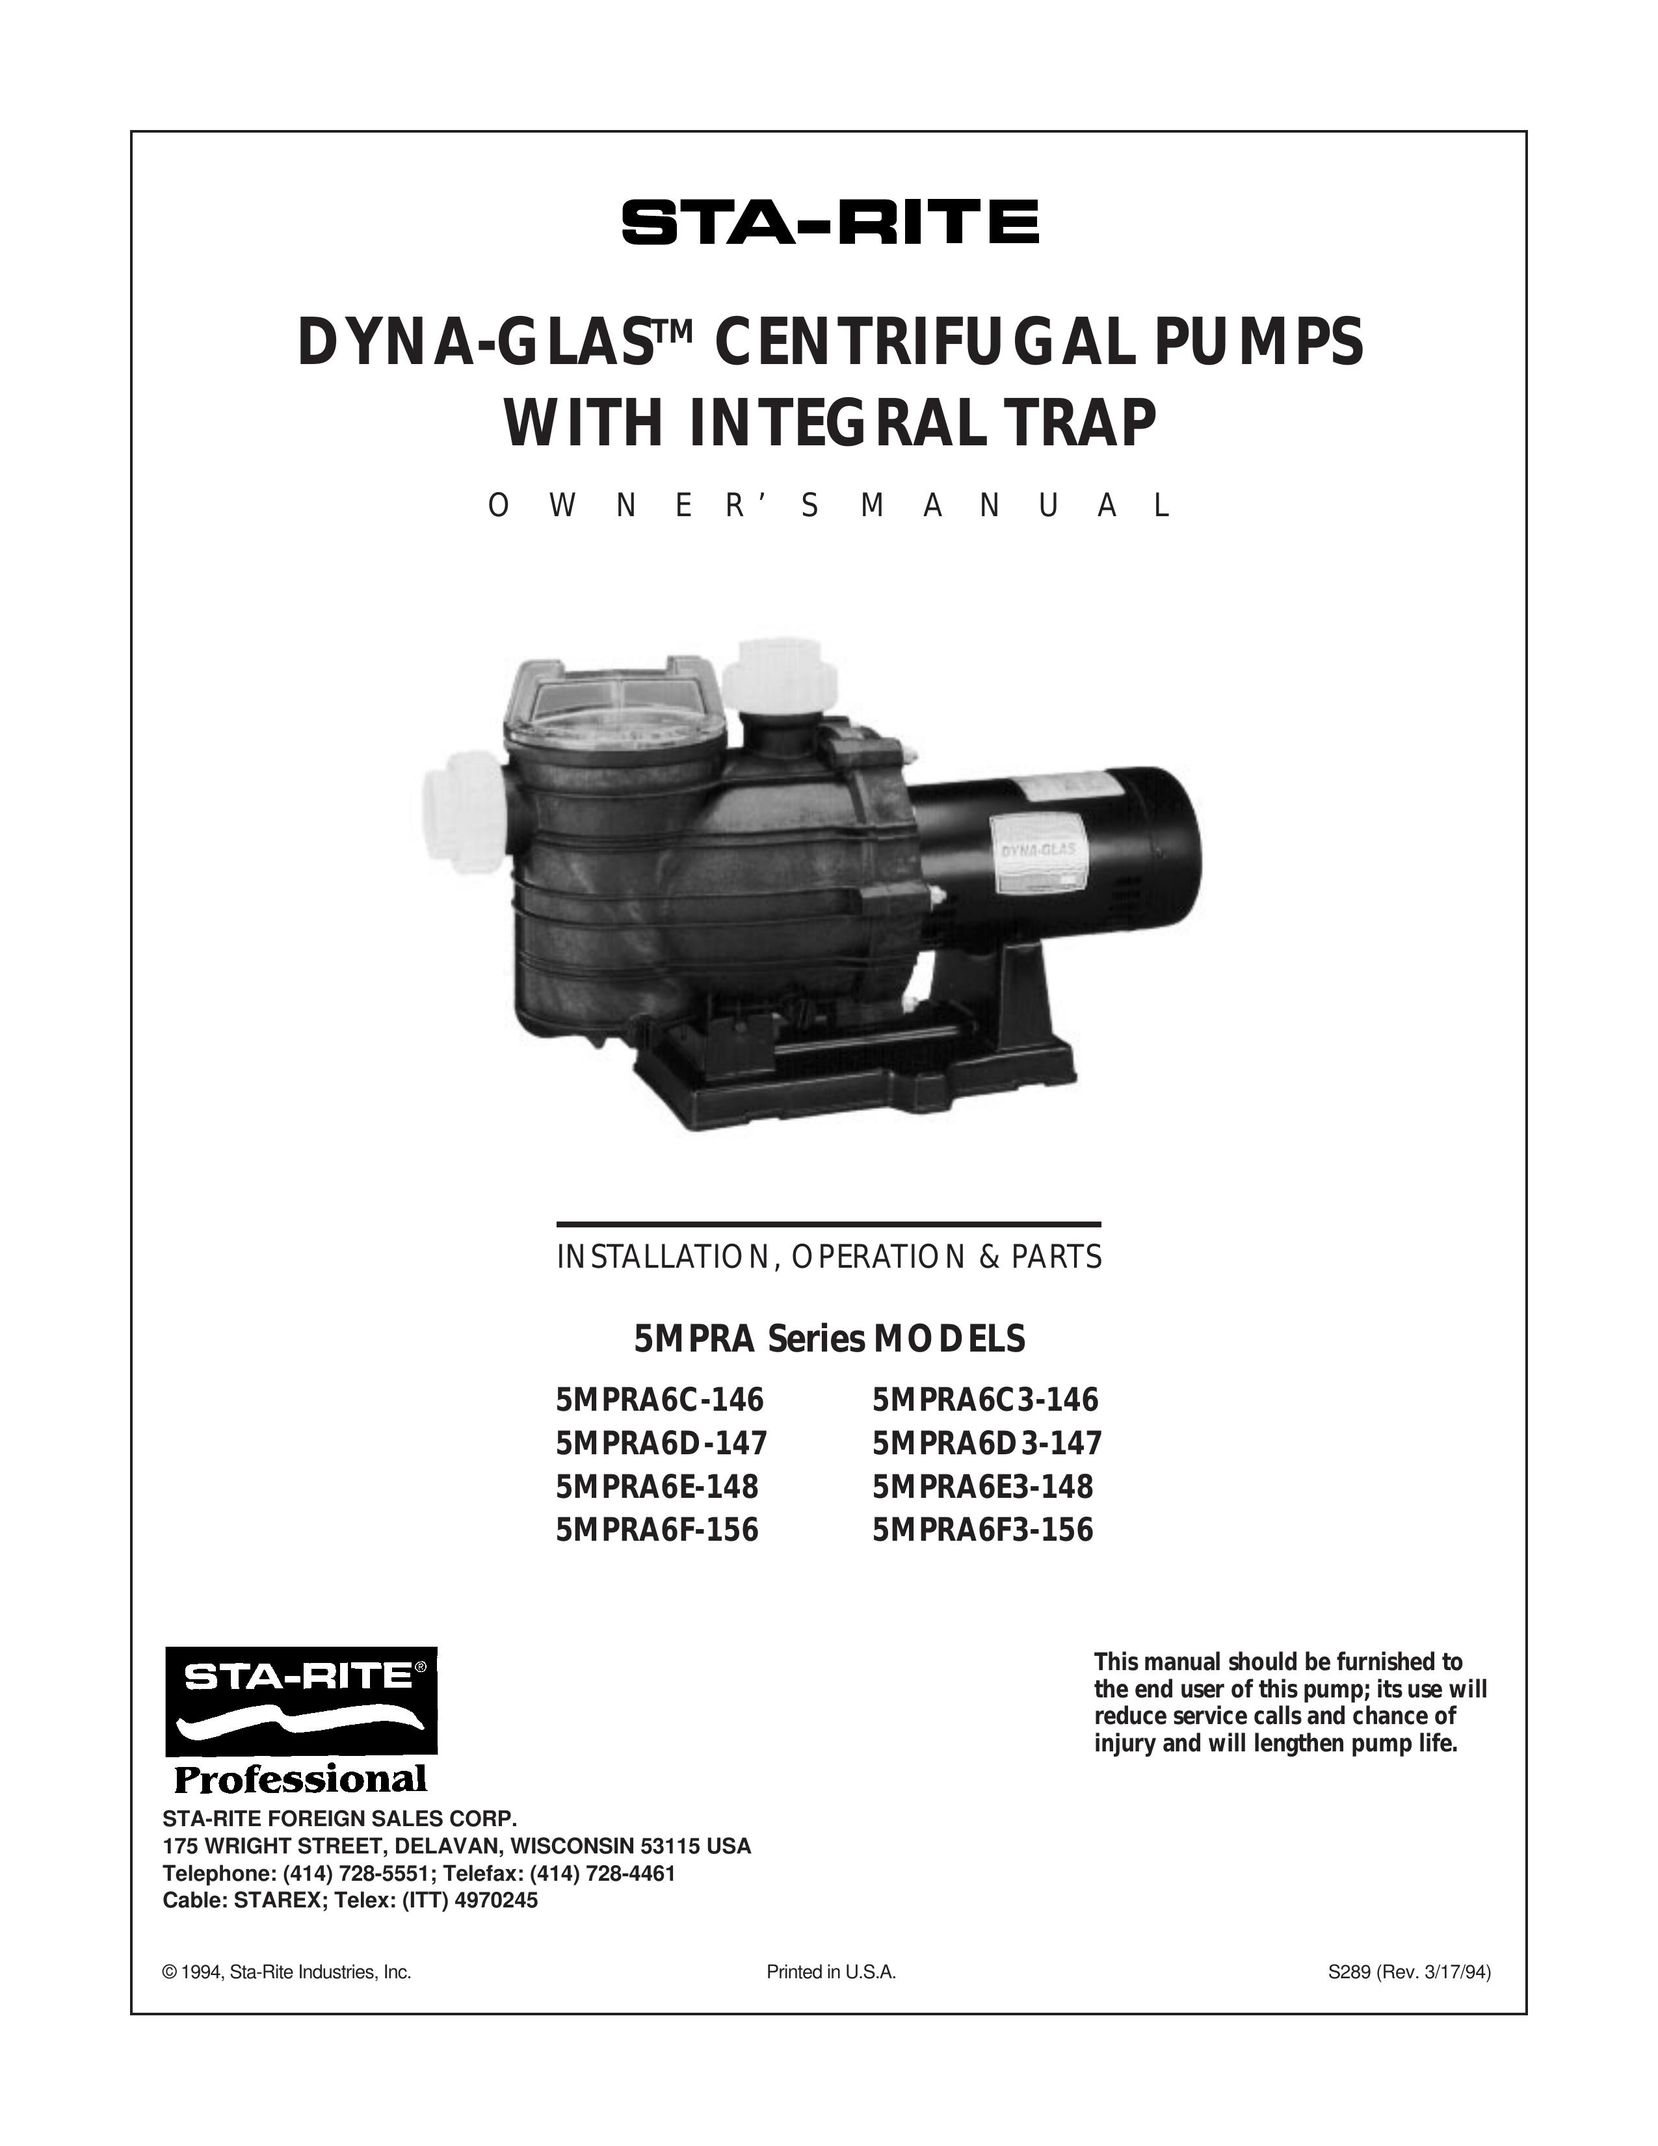 Mad Catz 5MPRA6E3-148 Water Pump User Manual